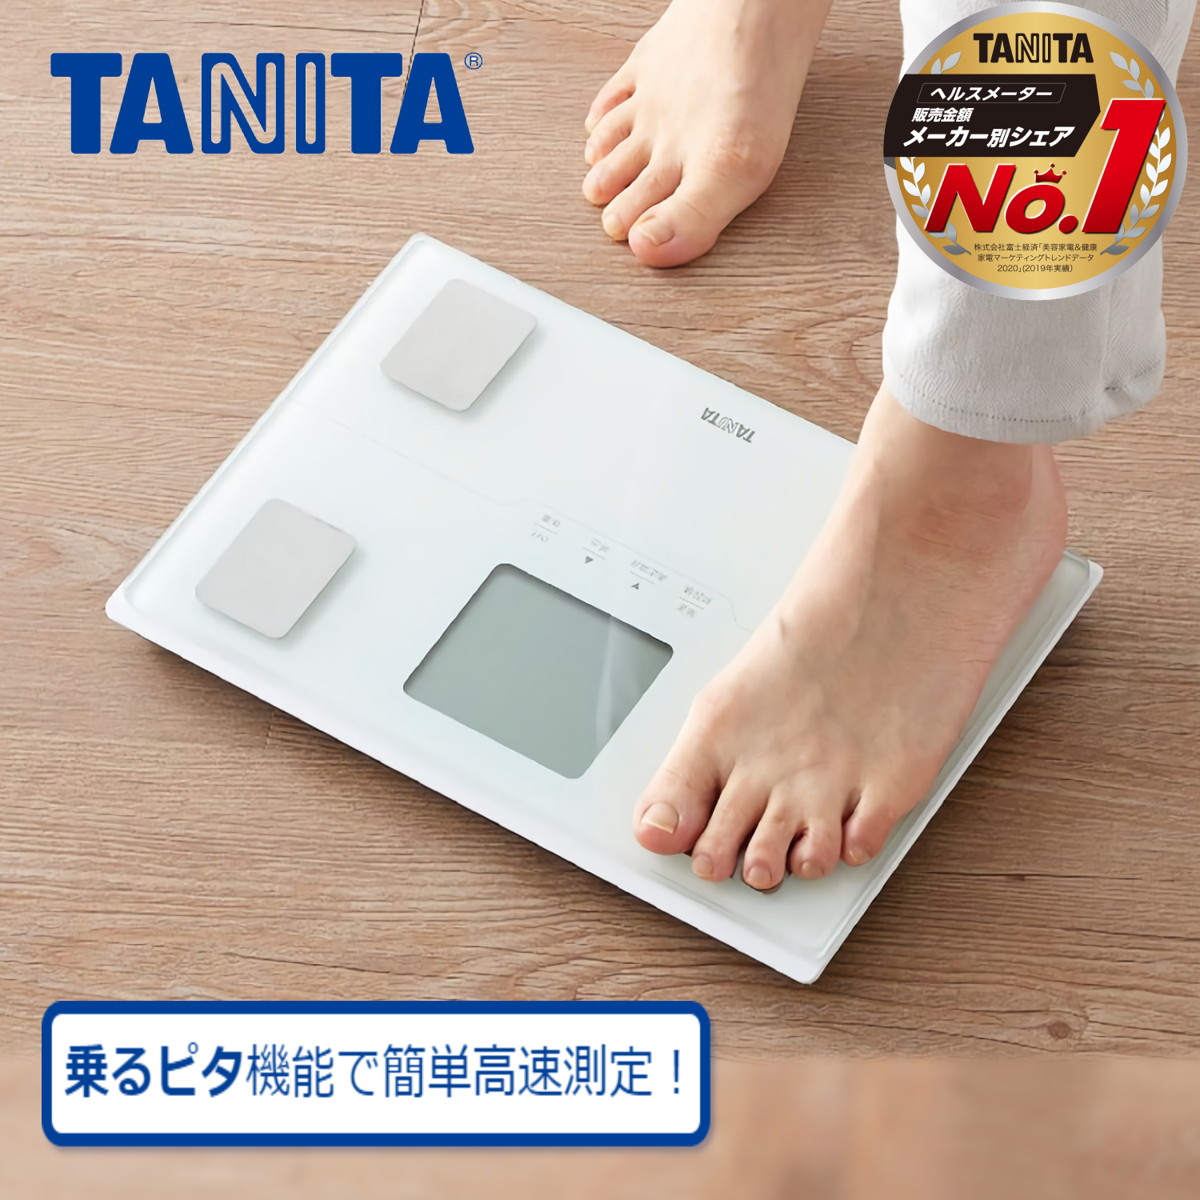 品質のいい タニタ 体組成計 - 体脂肪計